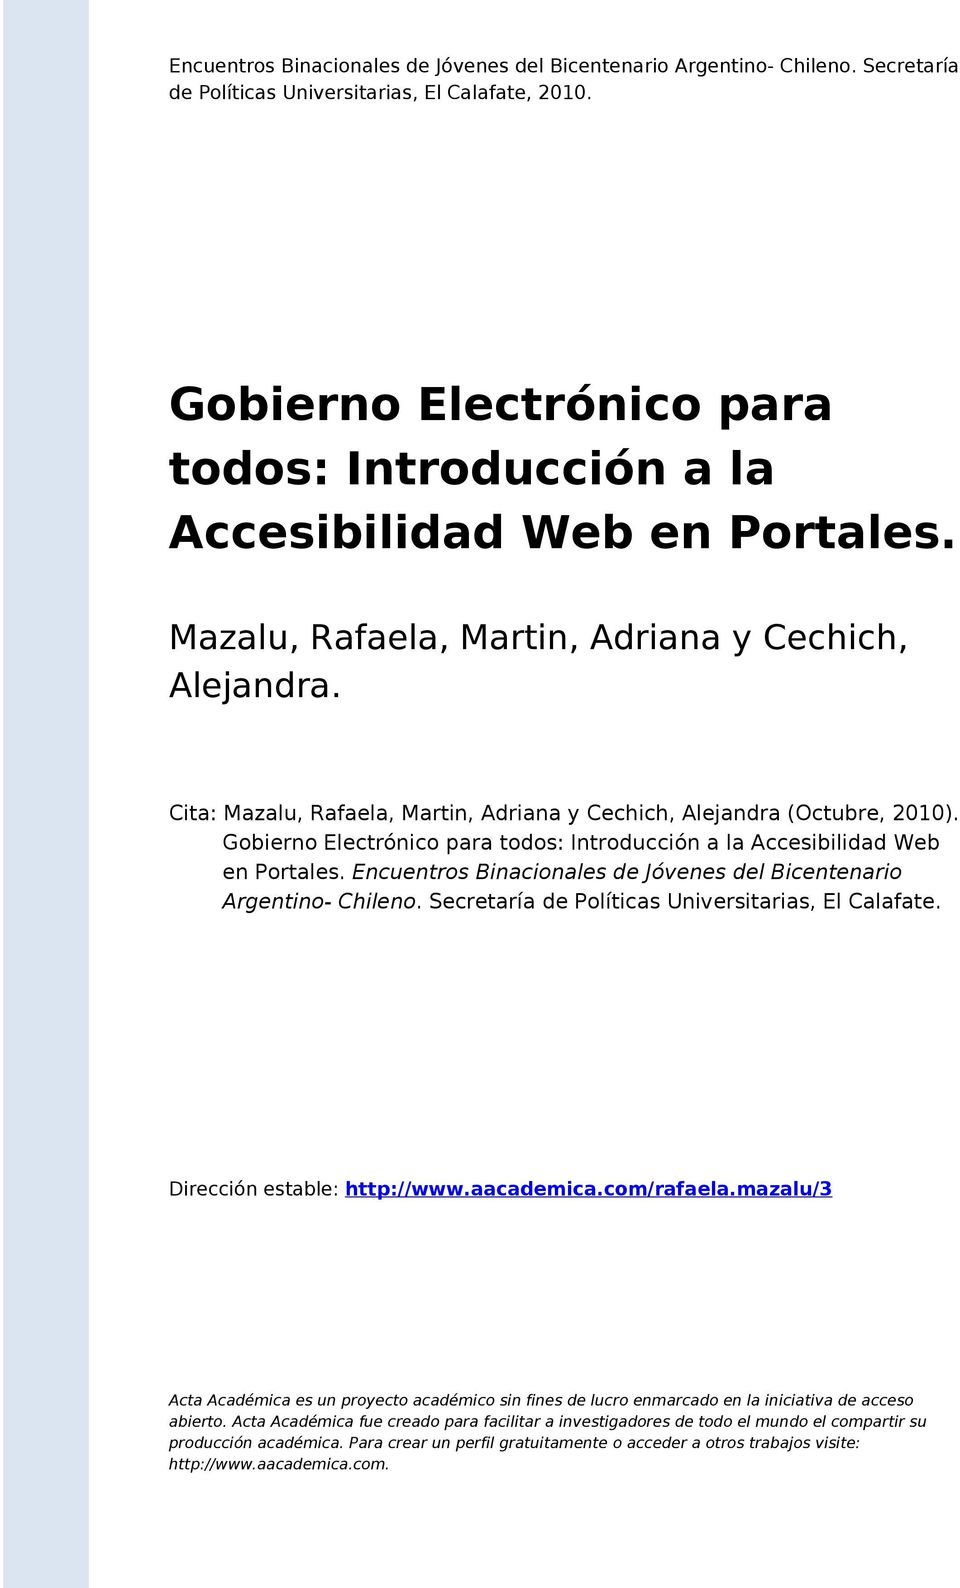 Cita: Mazalu, Rafaela, Martin, Adriana y Cechich, Alejandra (Octubre, 2010). Gobierno Electrónico para todos: Introducción a la Accesibilidad Web en Portales.